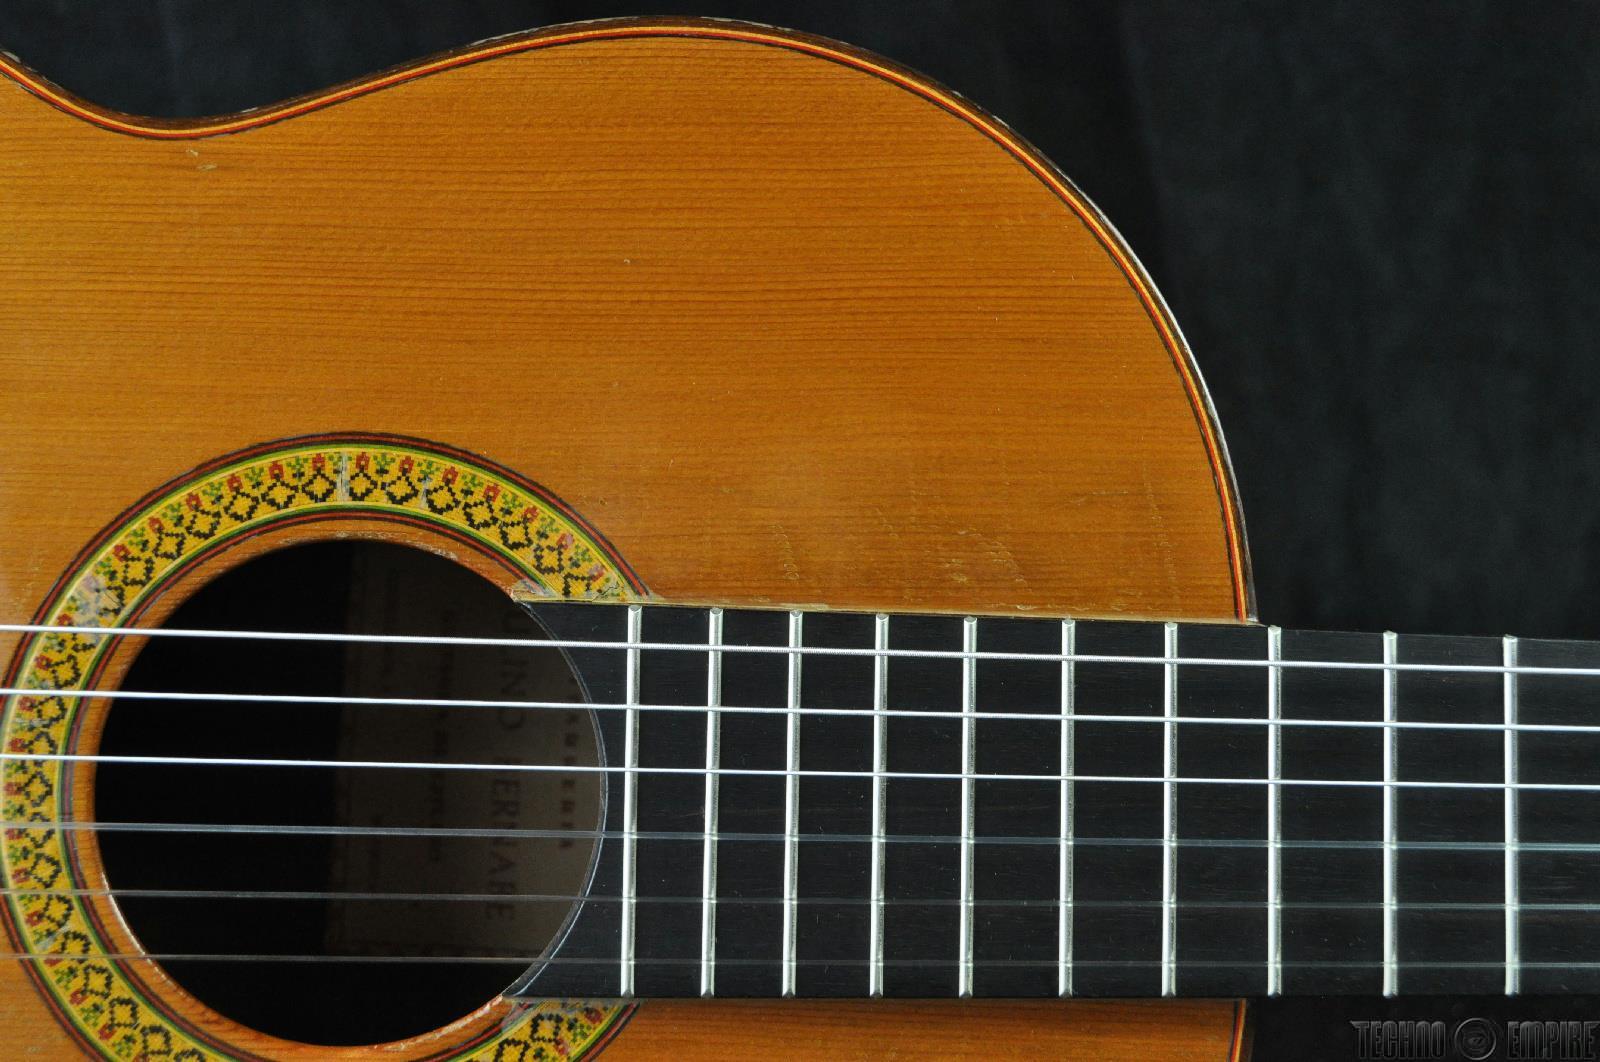 guitarra de estudio paulino bernabe